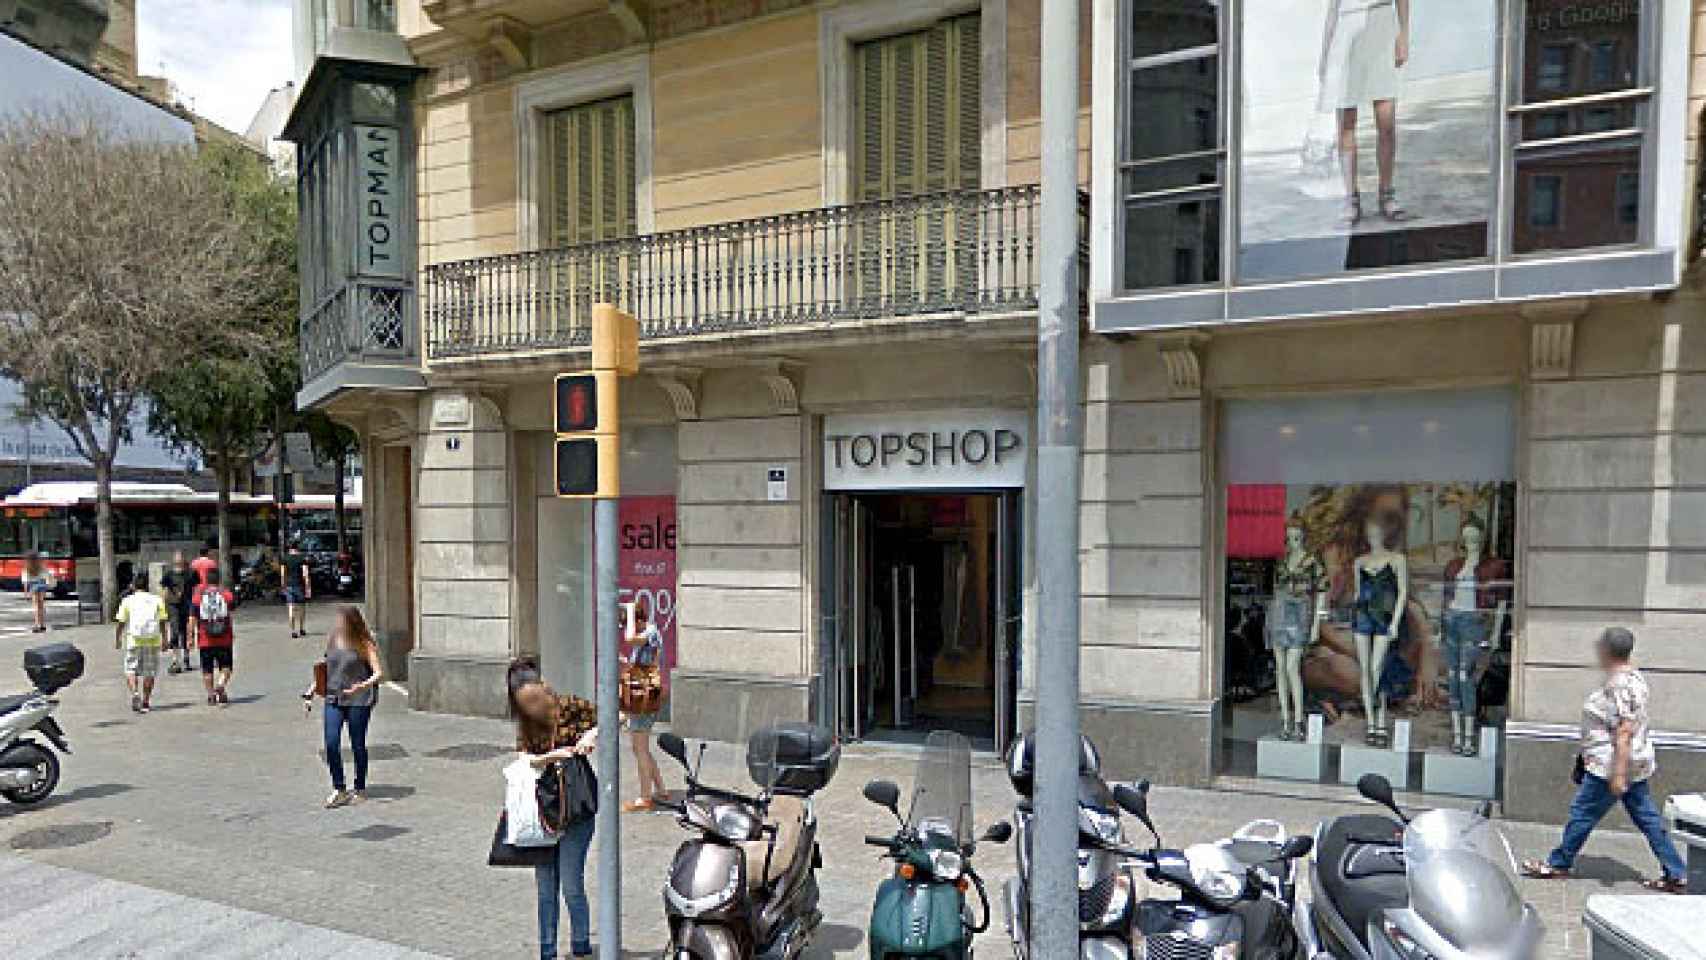 Topshop cerrará la única tienda que tiene en España, situada en el centro de Barcelona, en las inmediateces del centro comercial El Triangle / CG